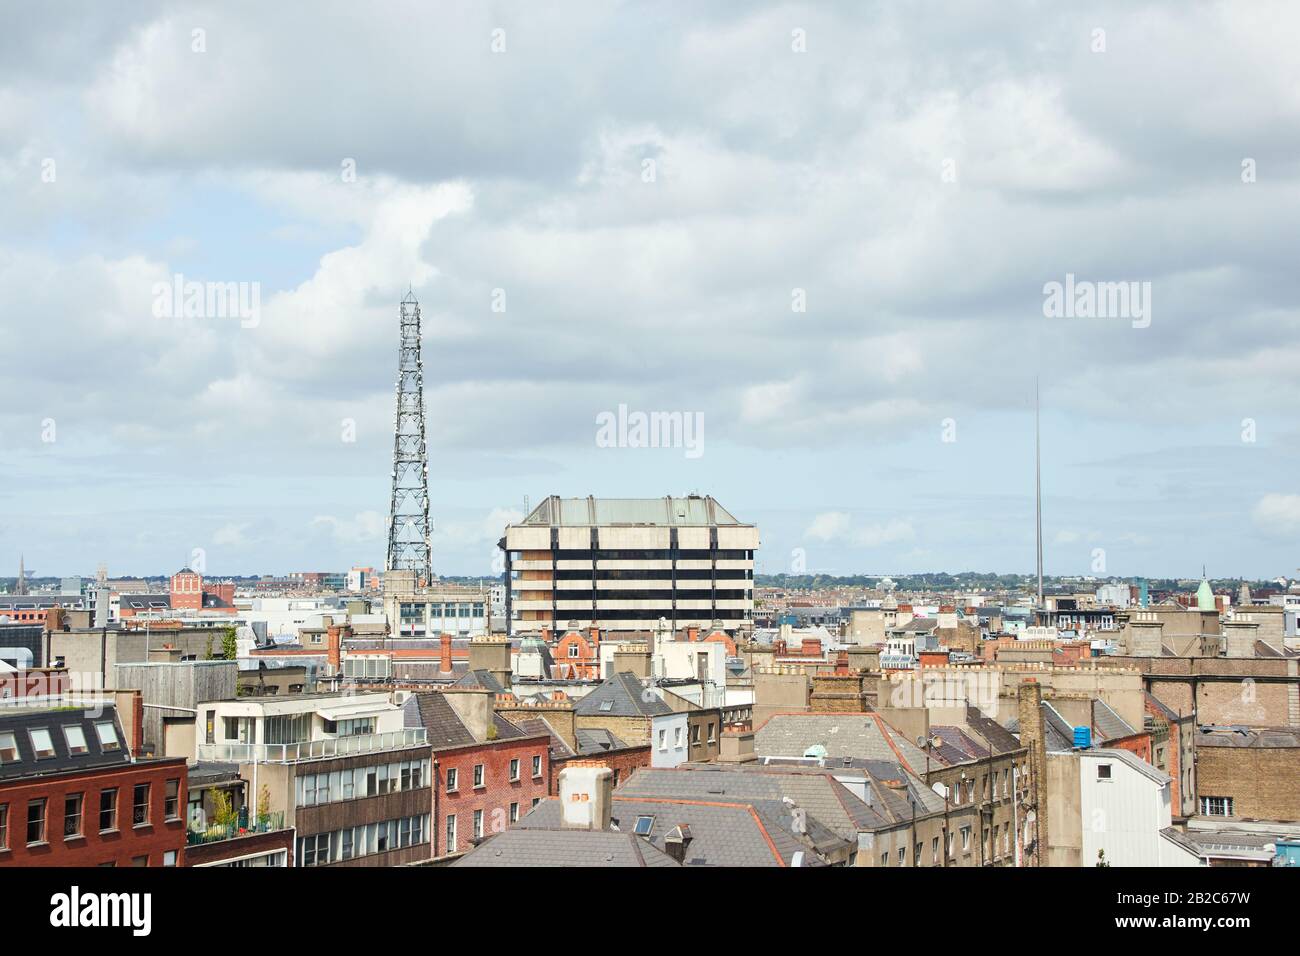 The city of Dublin, Ireland Stock Photo